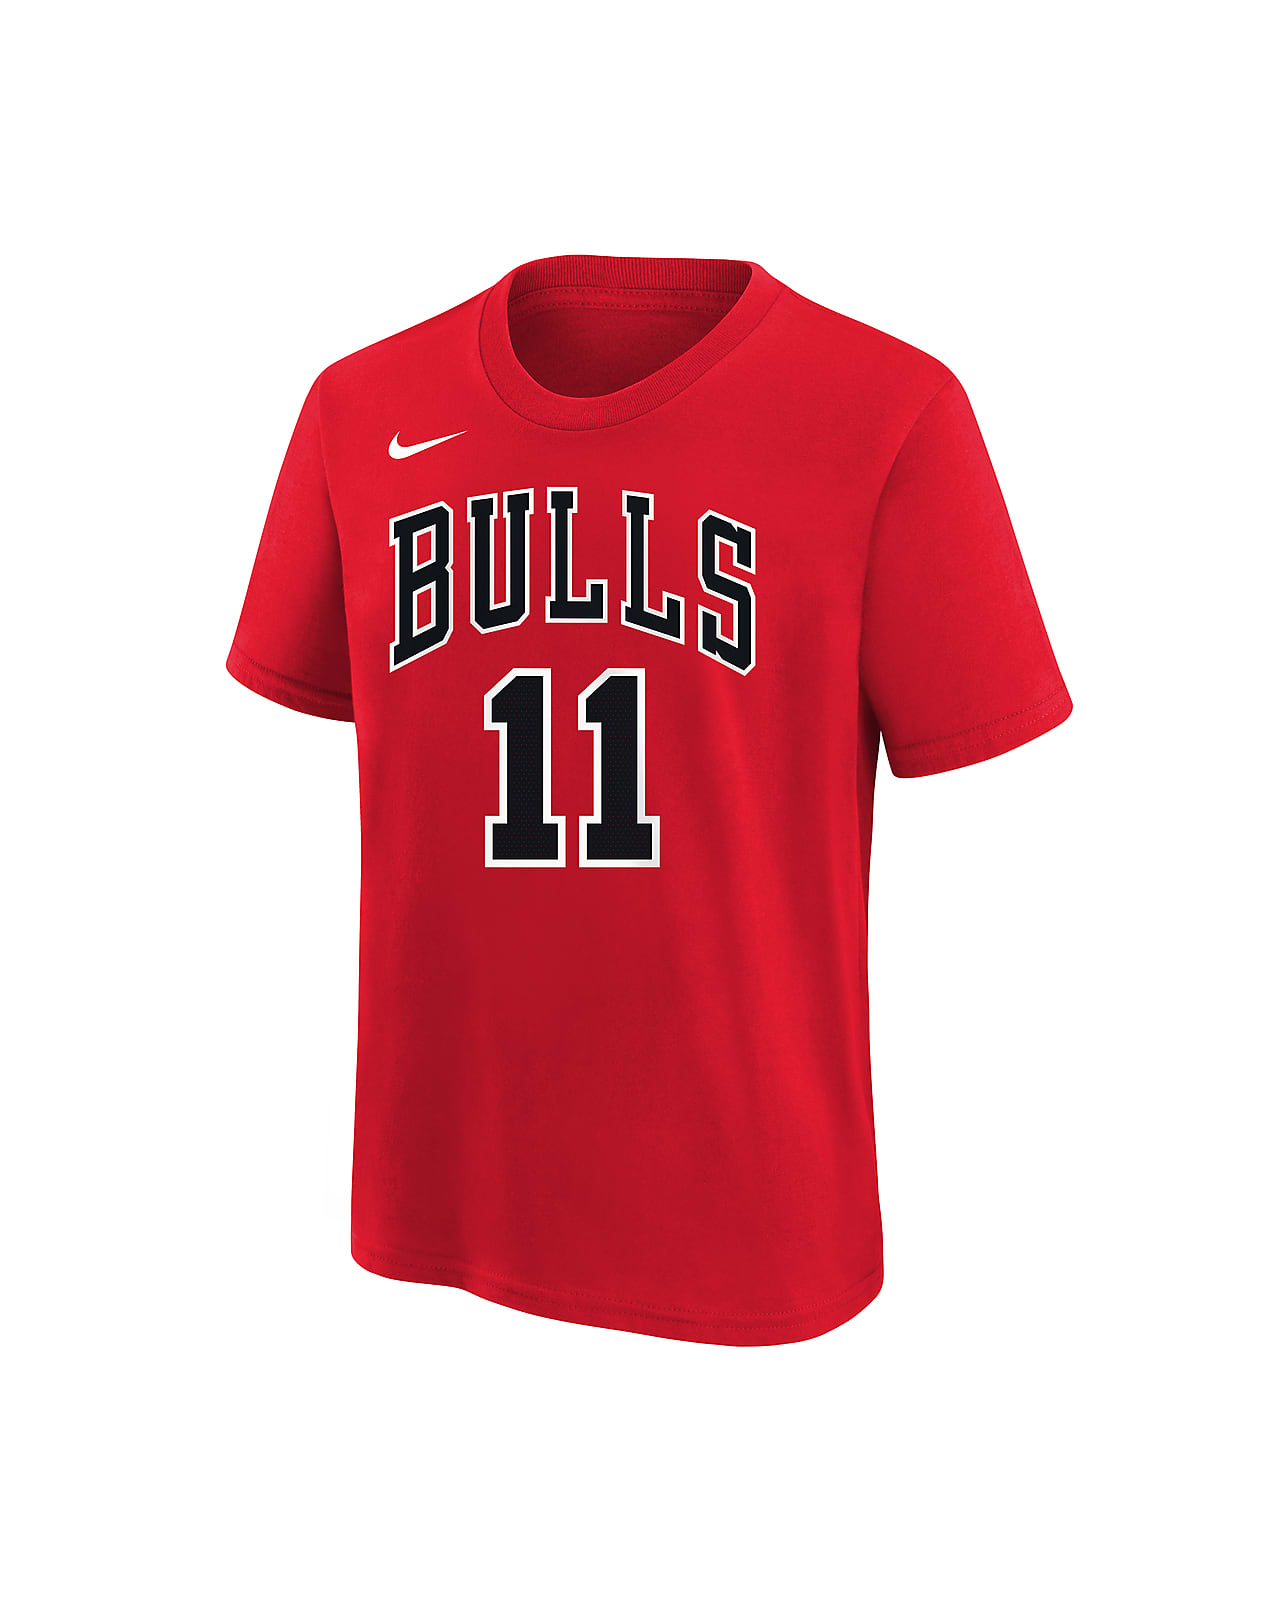 Chicago Bulls Older Kids' (Boys') Nike NBA T-Shirt